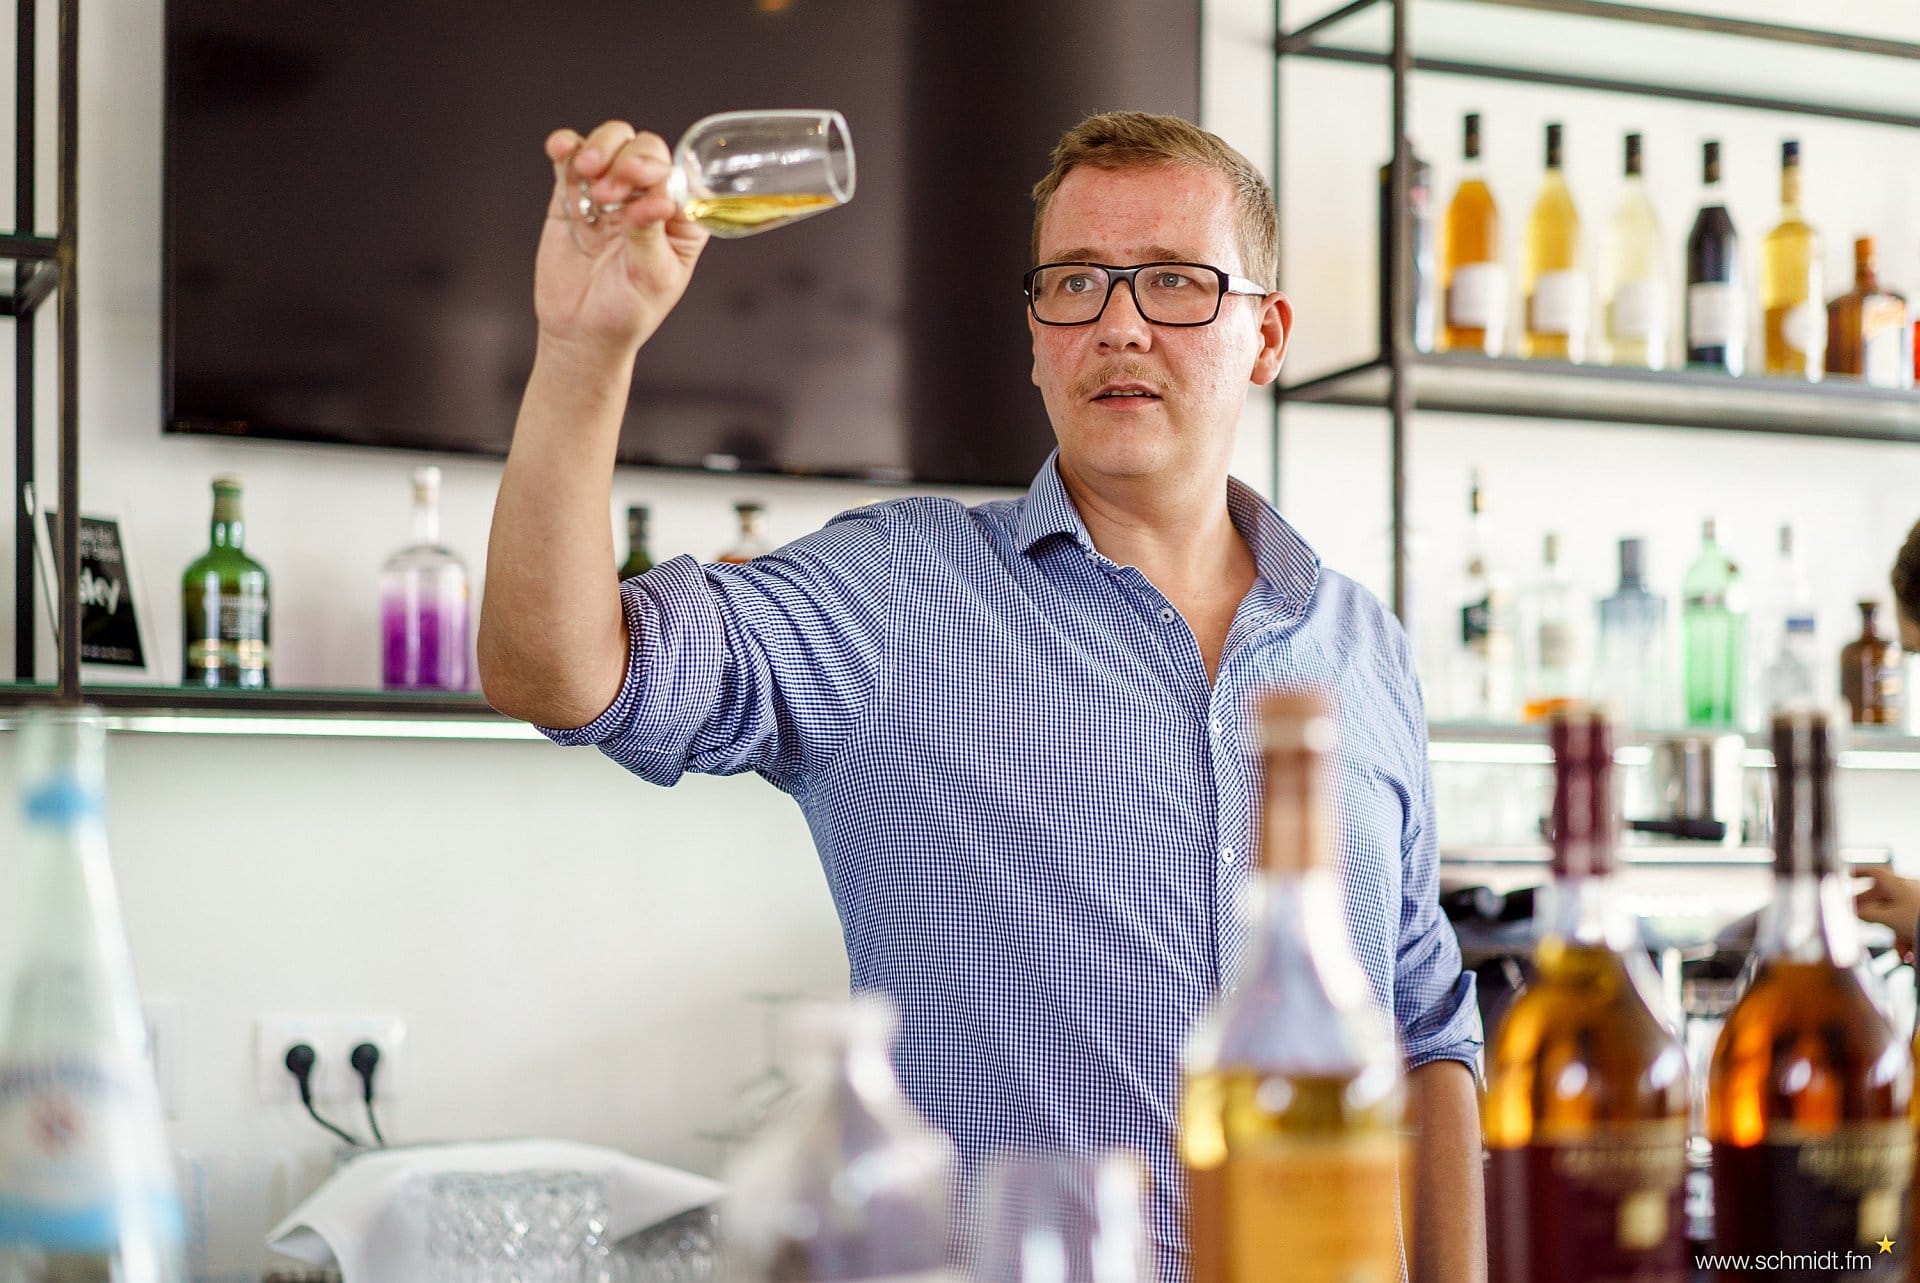 Der Bartender, Gastronomie-Berater und Autor Thomas Zilm hat die Geschichte des Tequila sehr detailliert und kompetent aufgearbeitet.